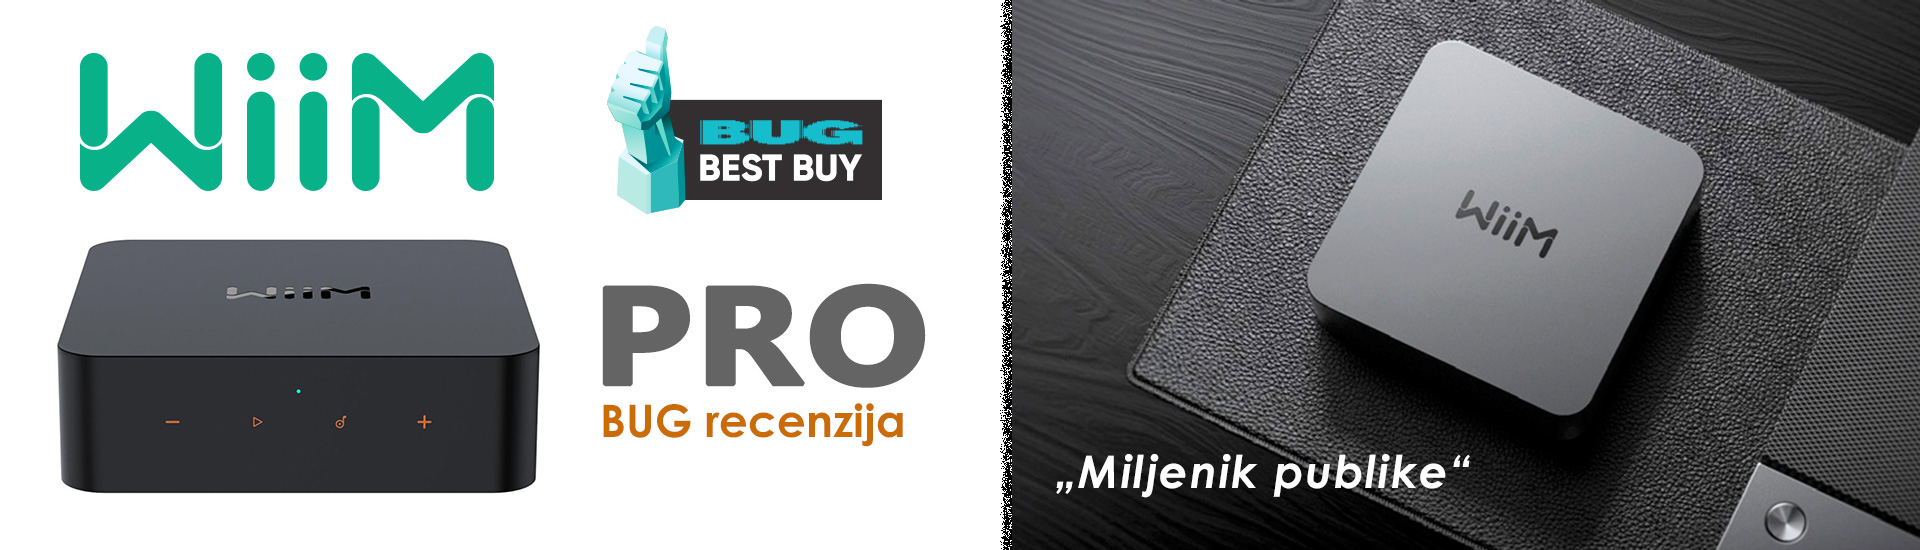 Wiim Pro BUG Best Buy